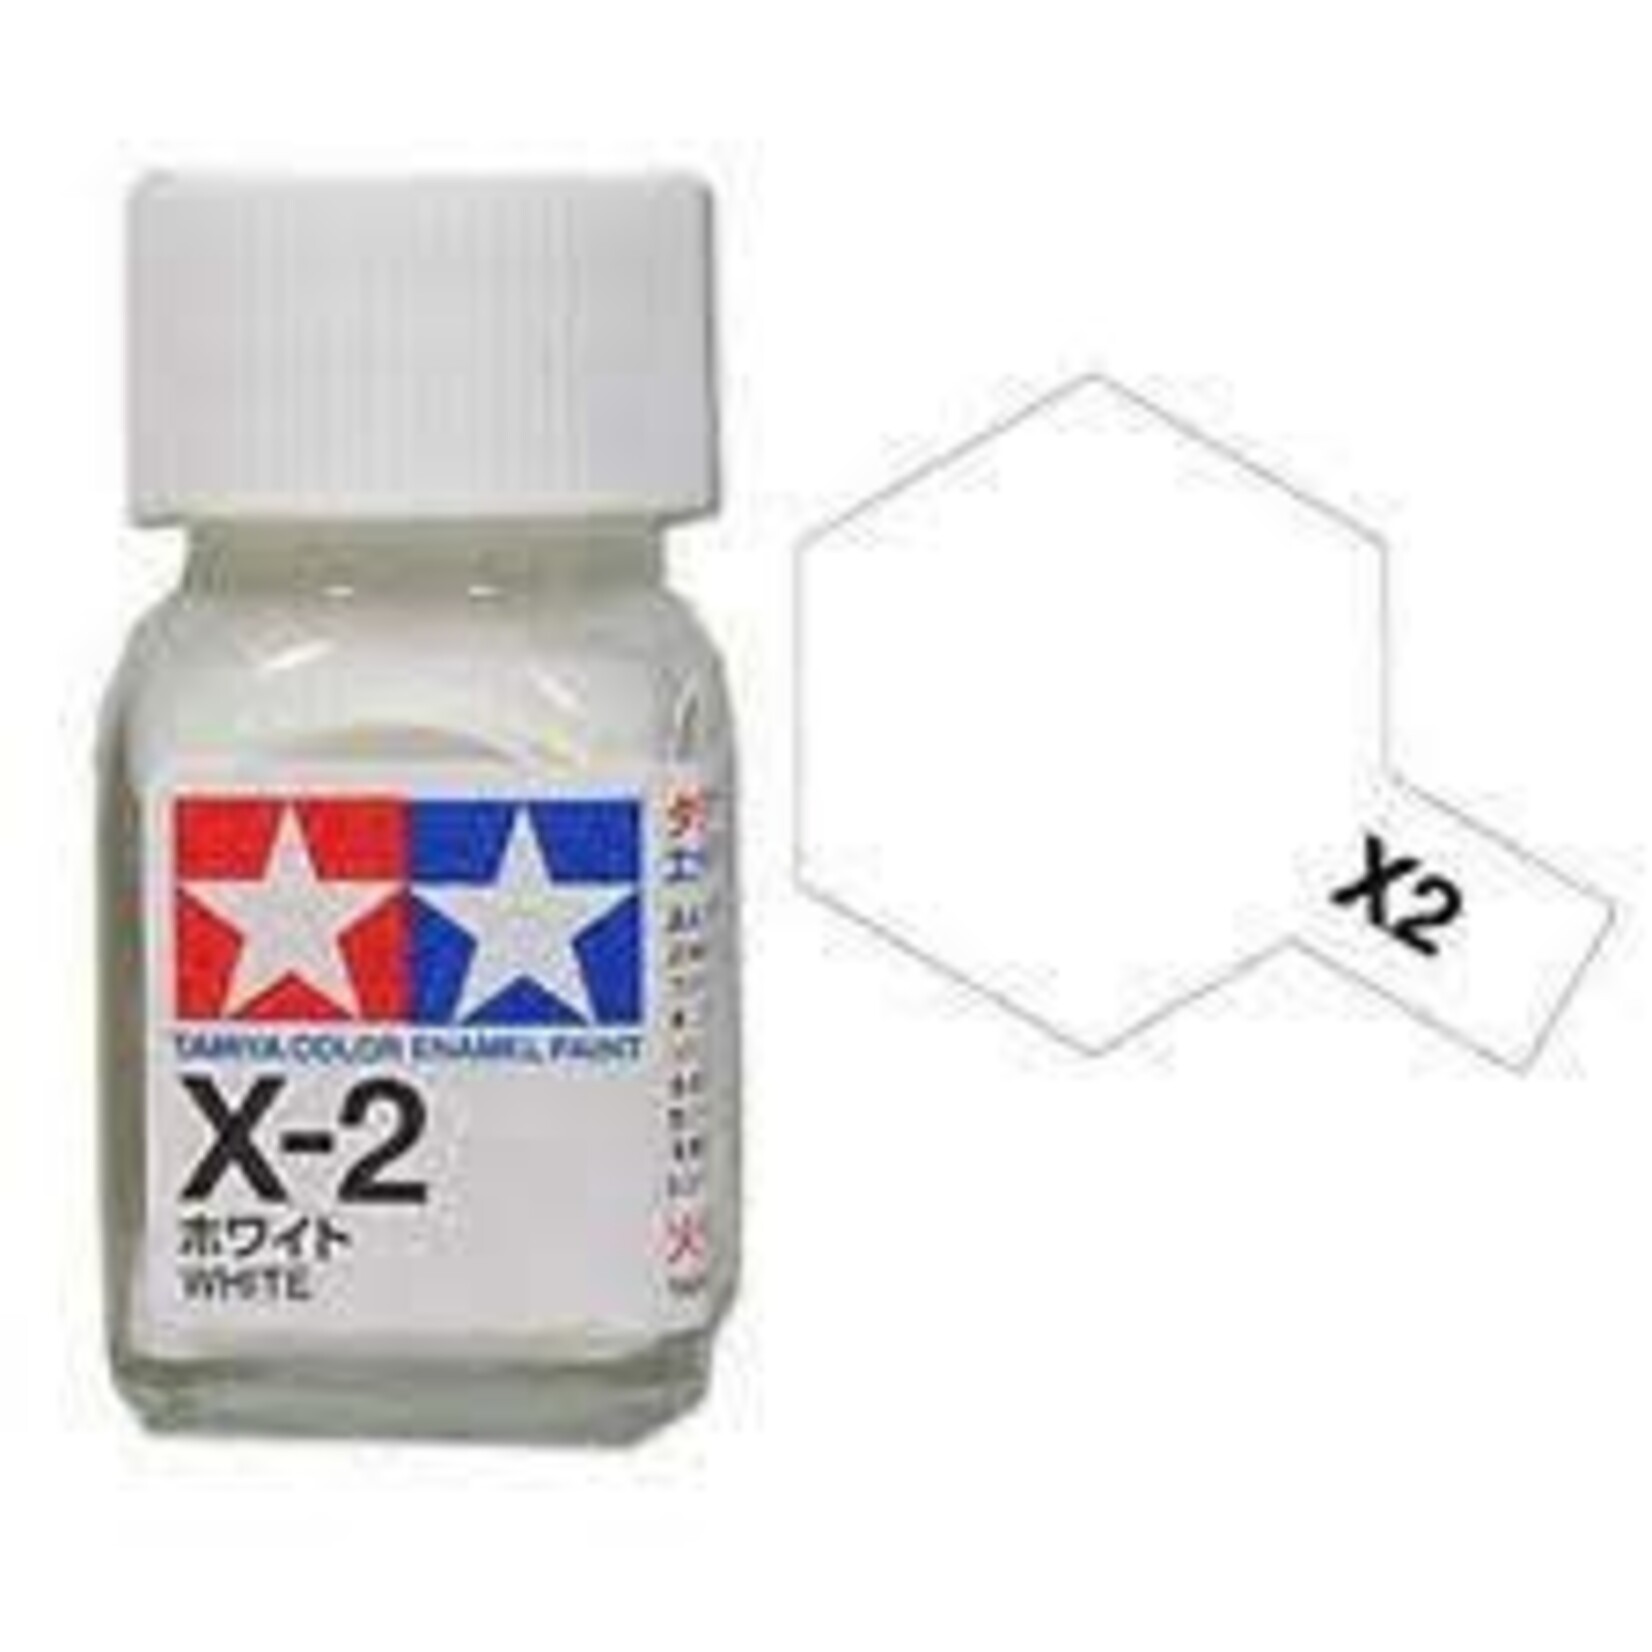 TAMEX02 Enamel Gloss White (10ml)